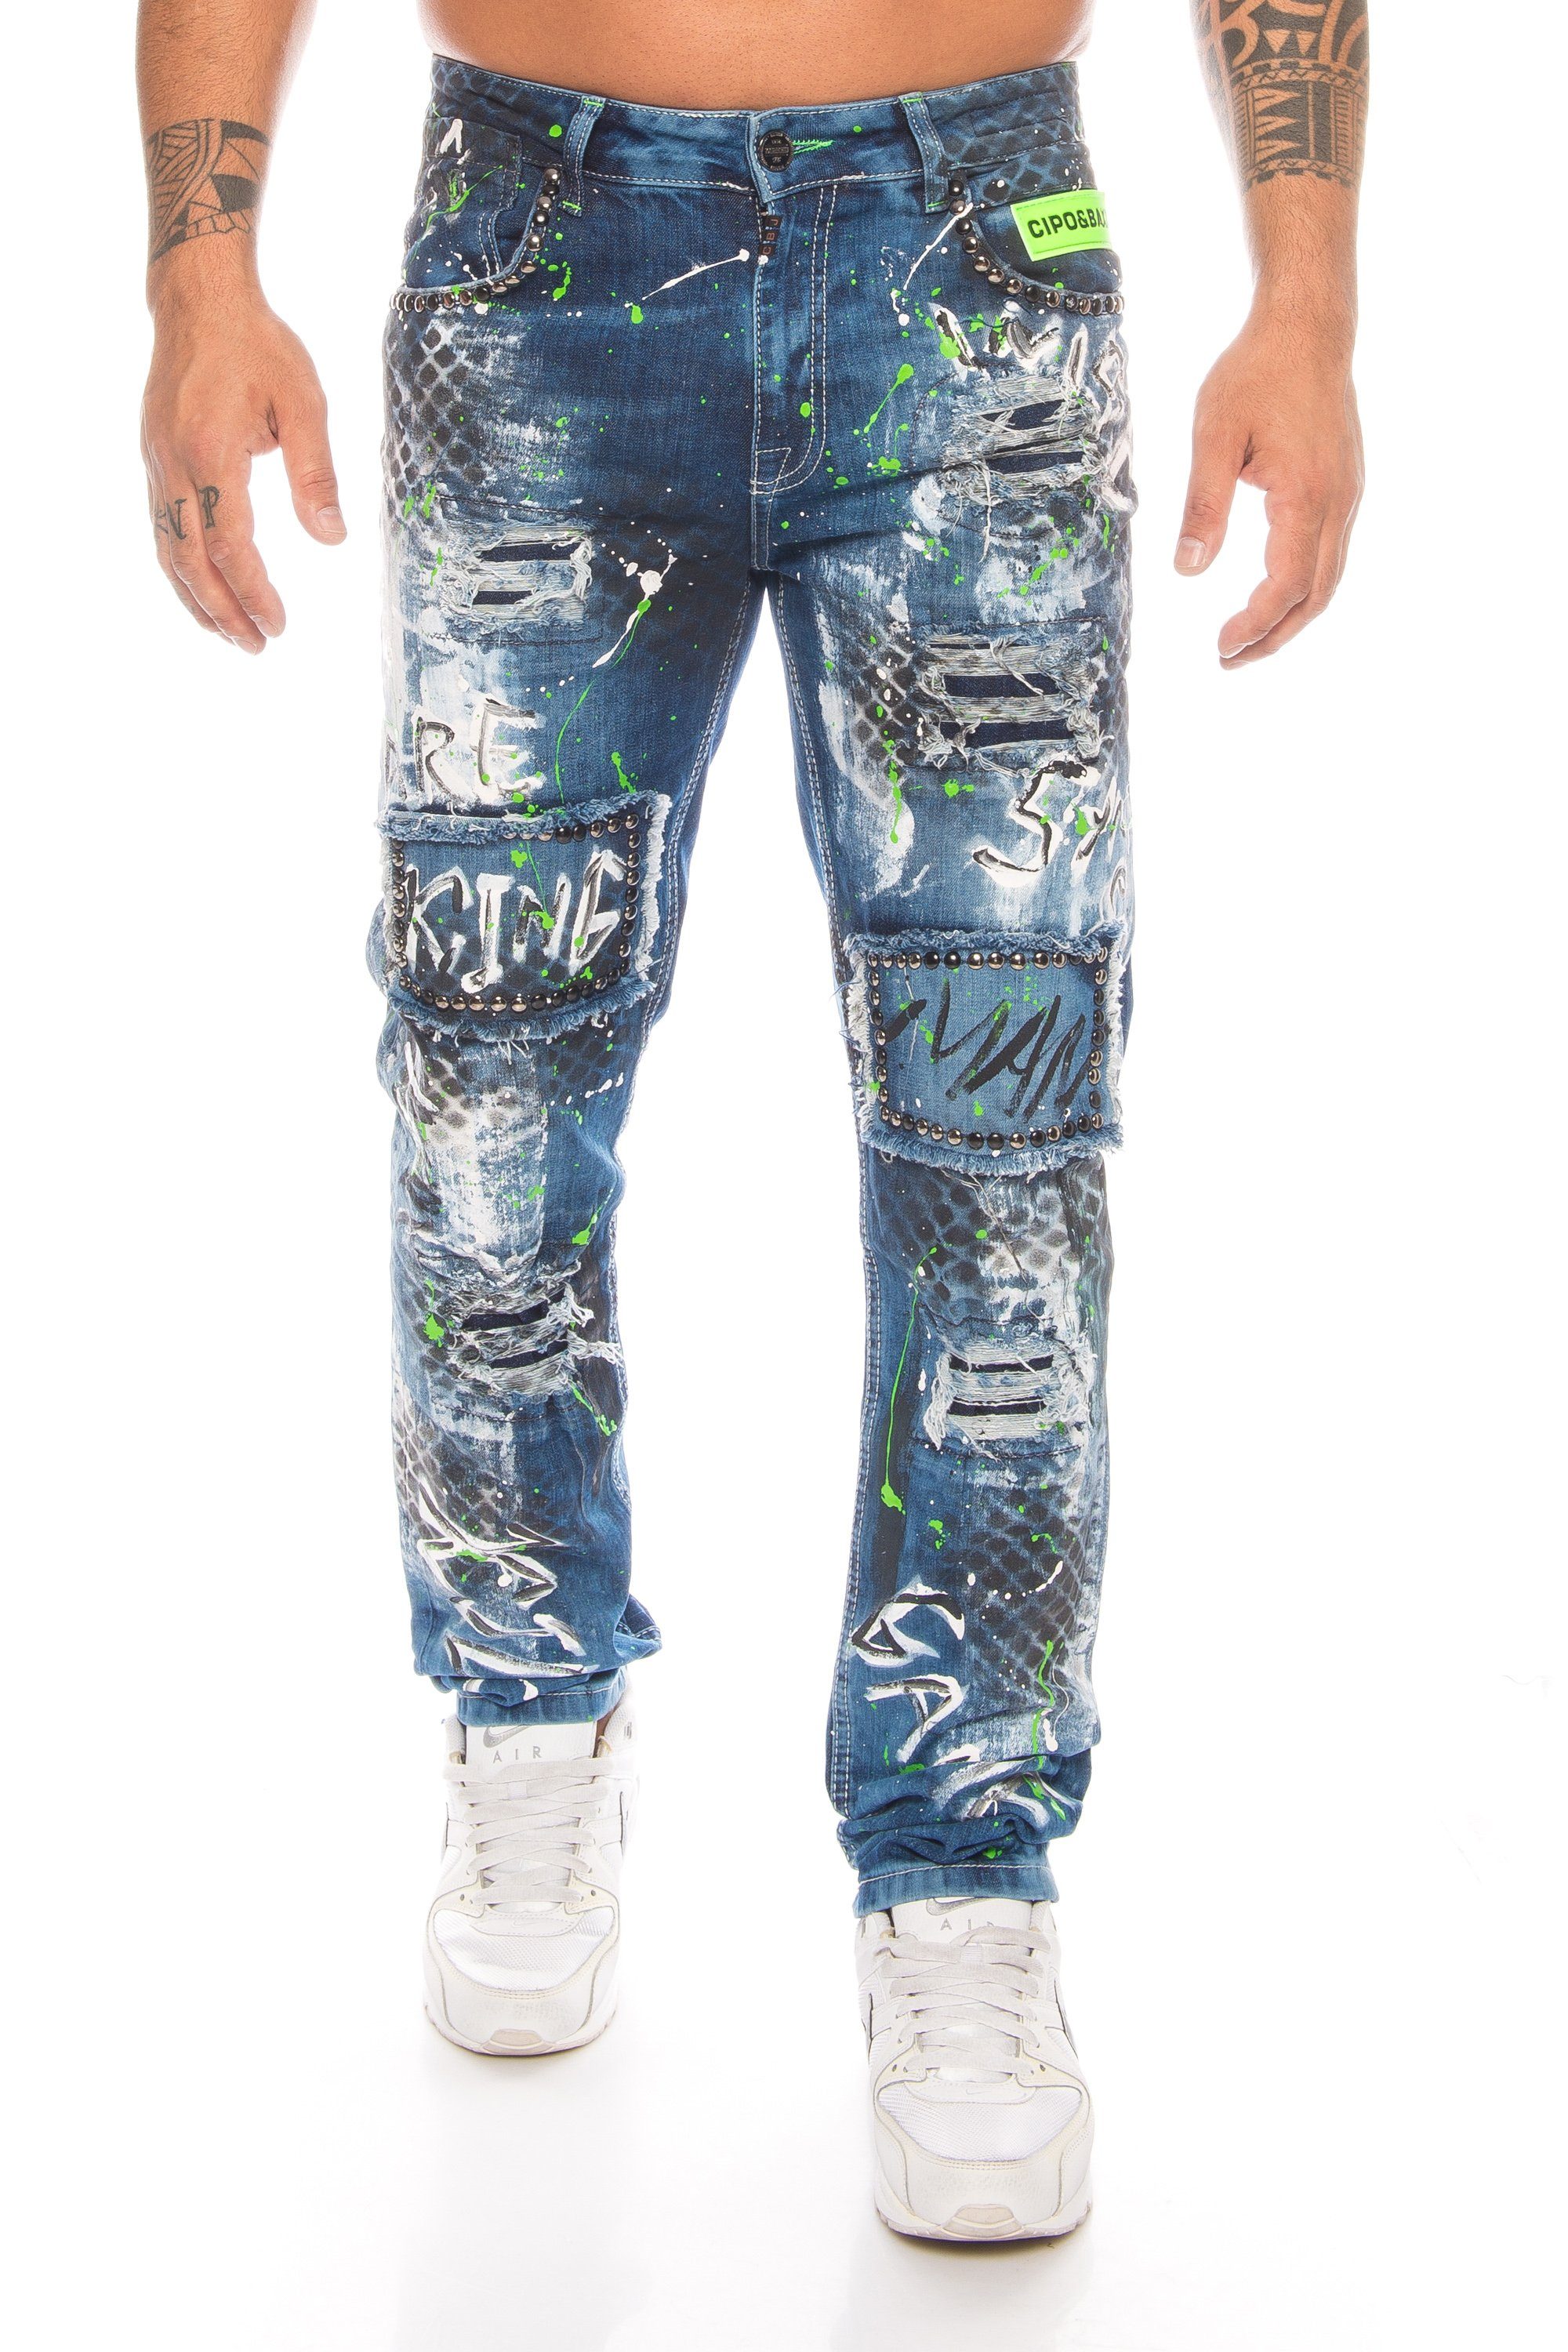 Cipo & Baxx Slim-fit-Jeans »Herren Jeans Hose mit ausgefallenem Graffiti  Design« Aufwendige Verarbeitung mit Nieten und neongrünen Details